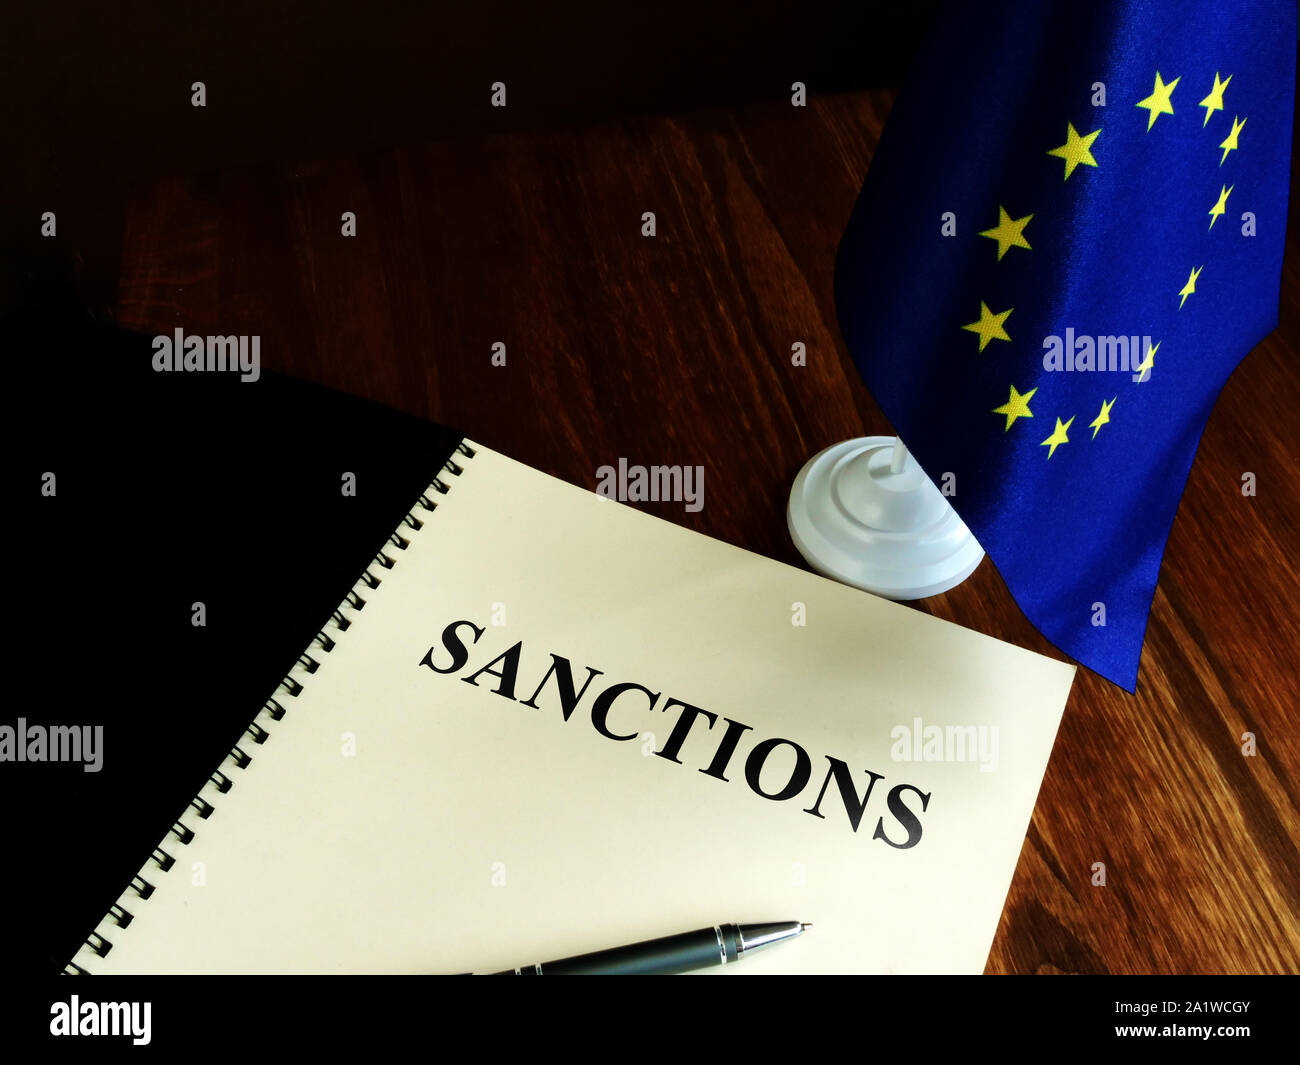 Elenco sanzioni e bandiera UE sulla scrivania. Foto Stock